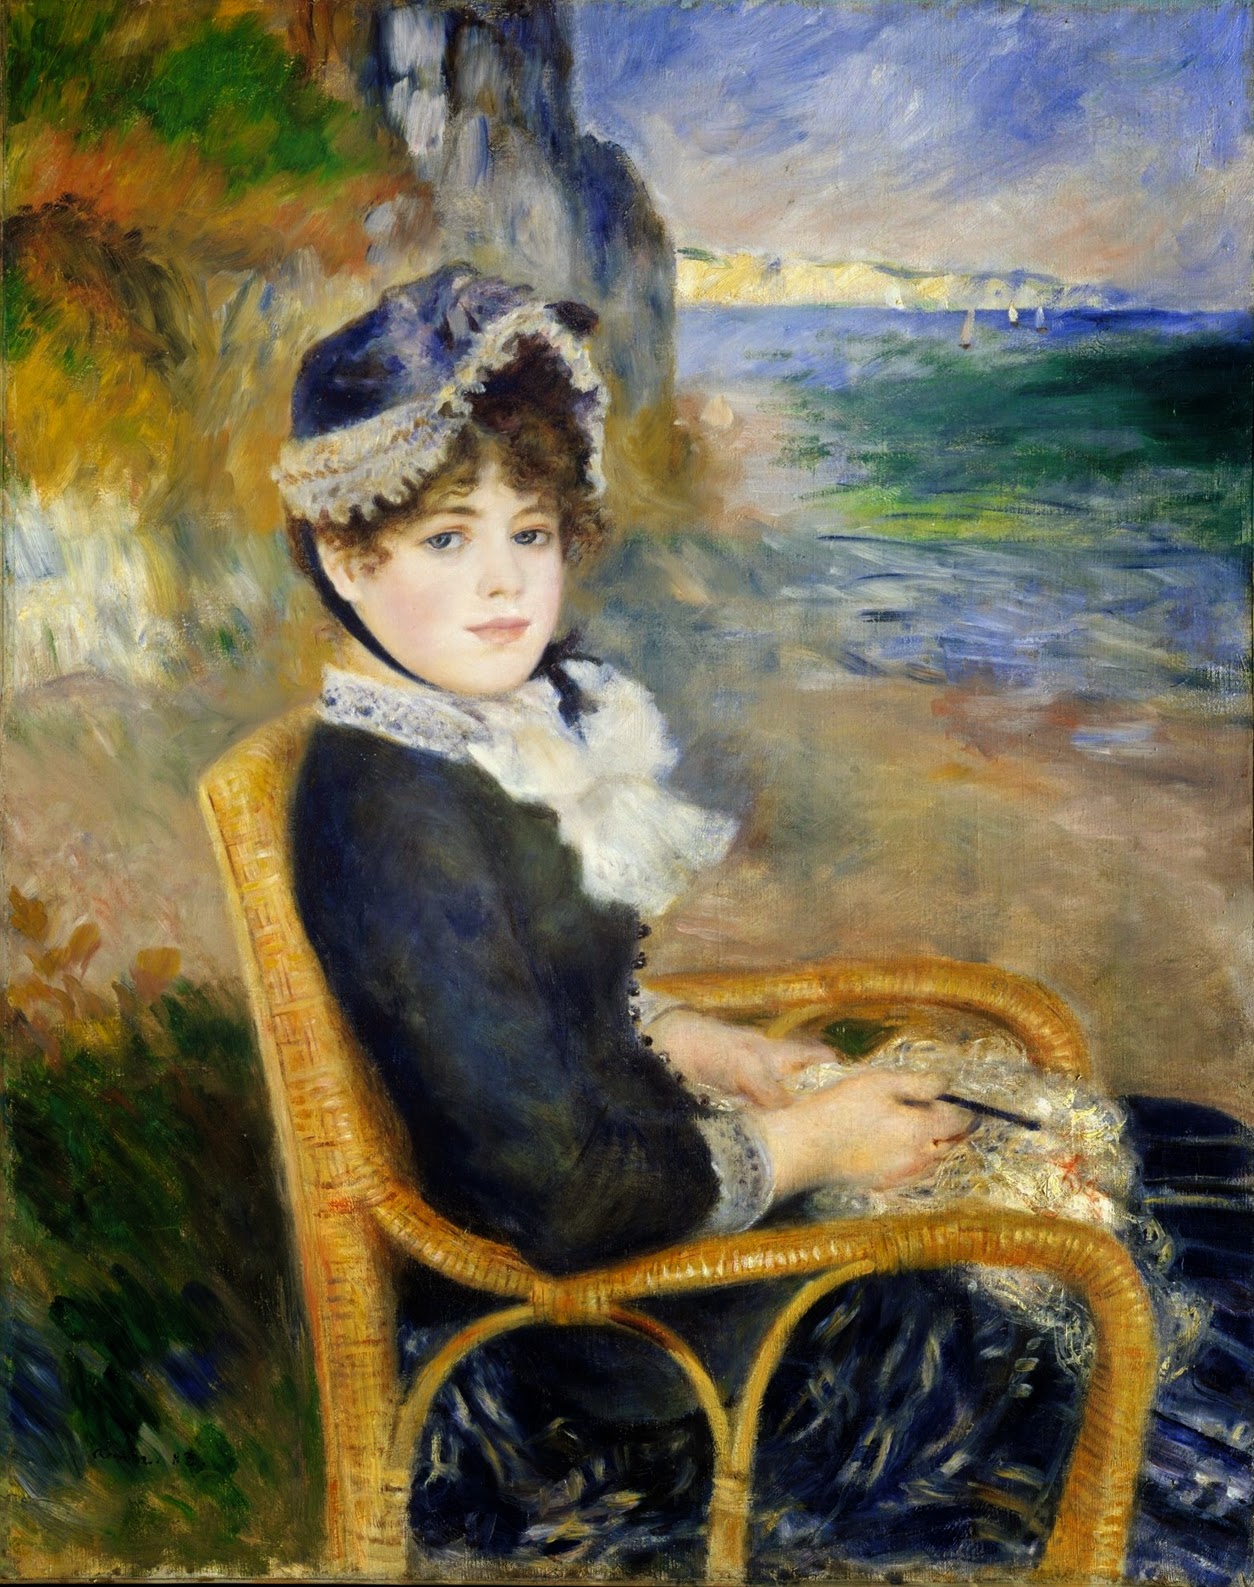 Pierre+Auguste+Renoir-1841-1-19 (115).jpg